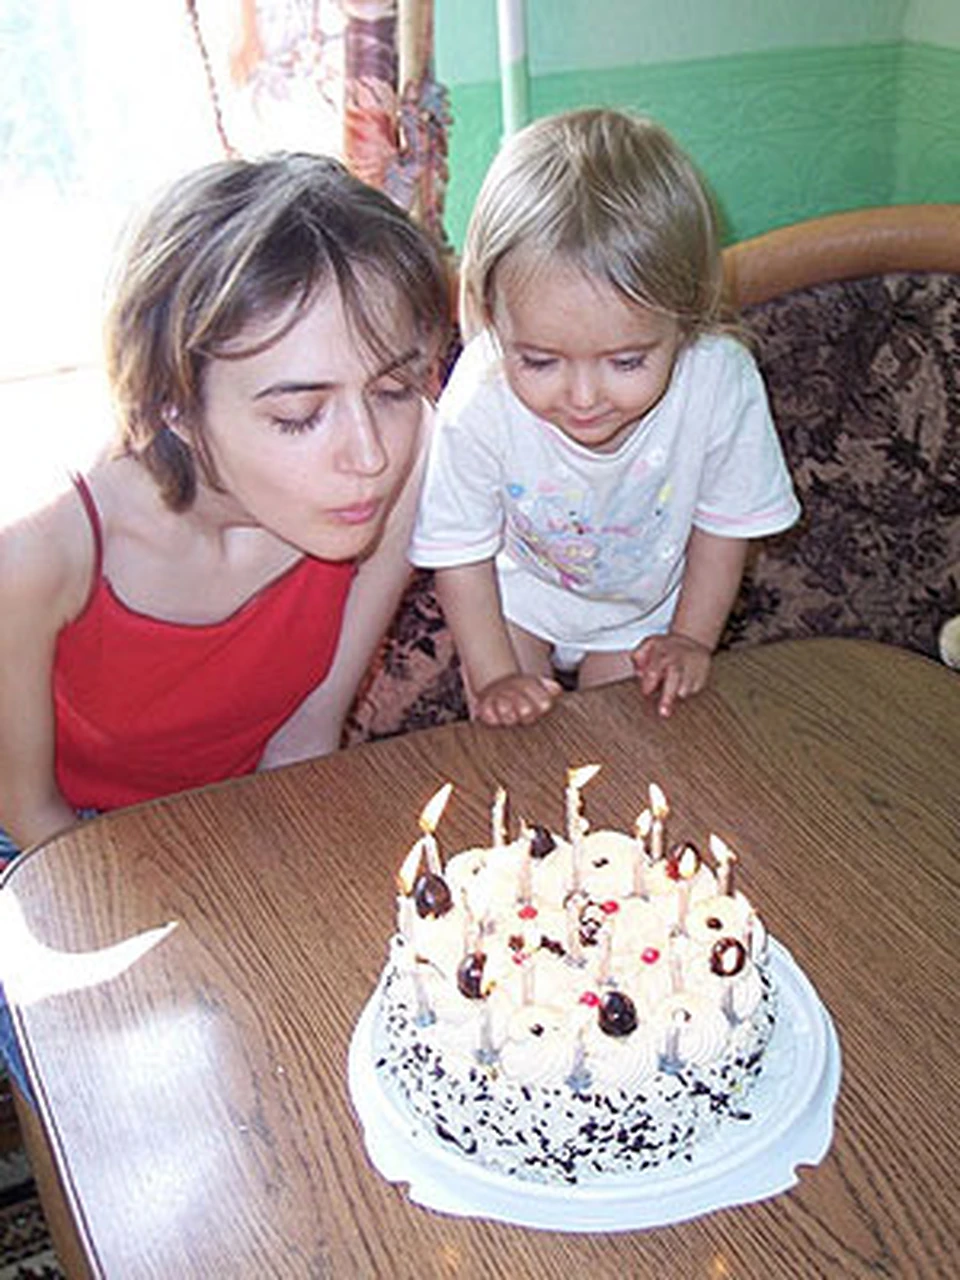 В этот году день рождения Алисы получился не таким праздничным, как бы хотелось